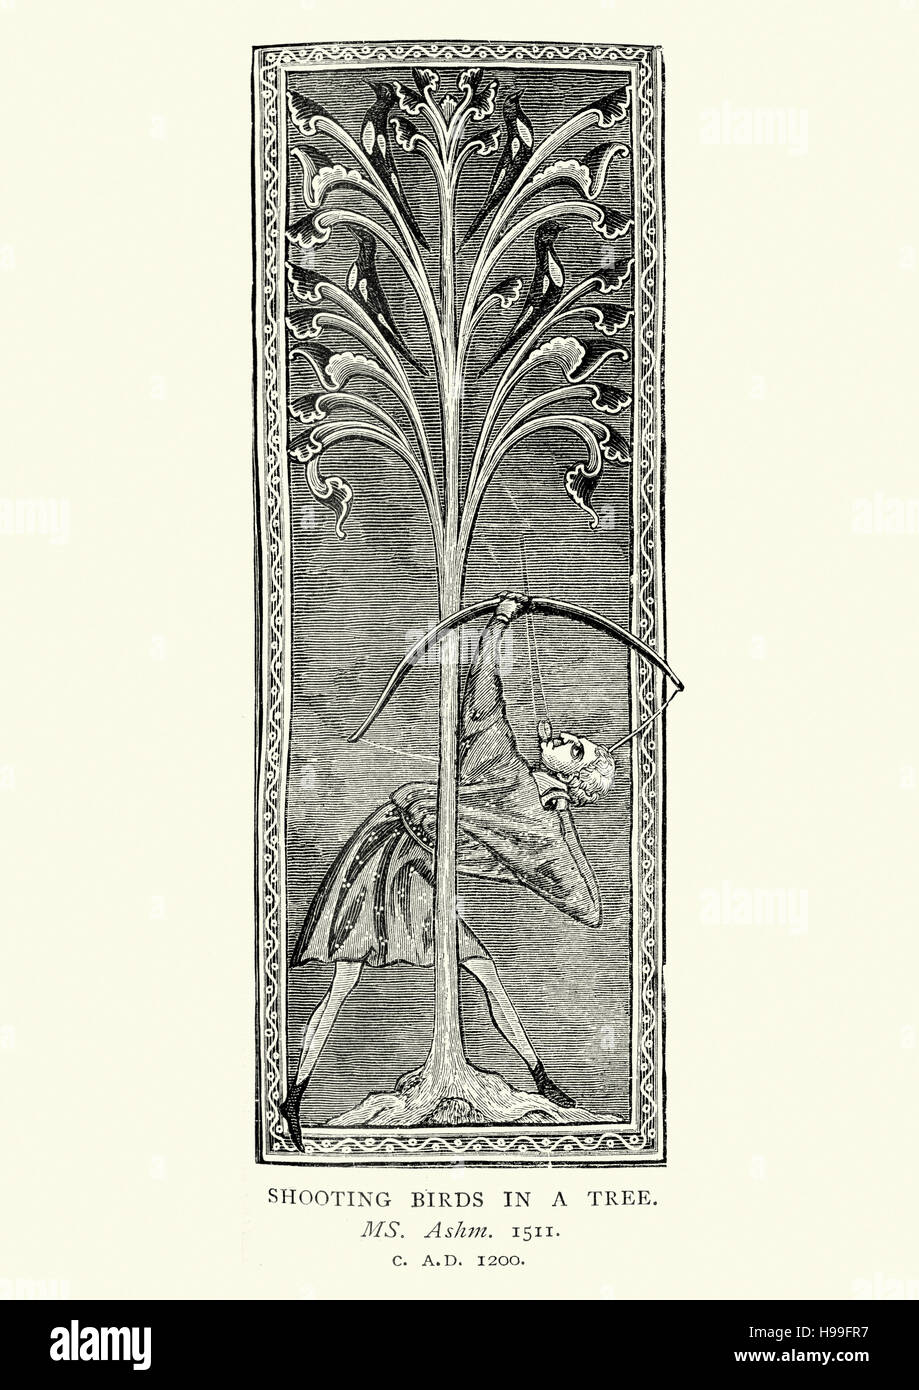 Il cacciatore medievale di caccia agli uccelli in una struttura ad albero con un arco e frecce, c. 1200 Foto Stock